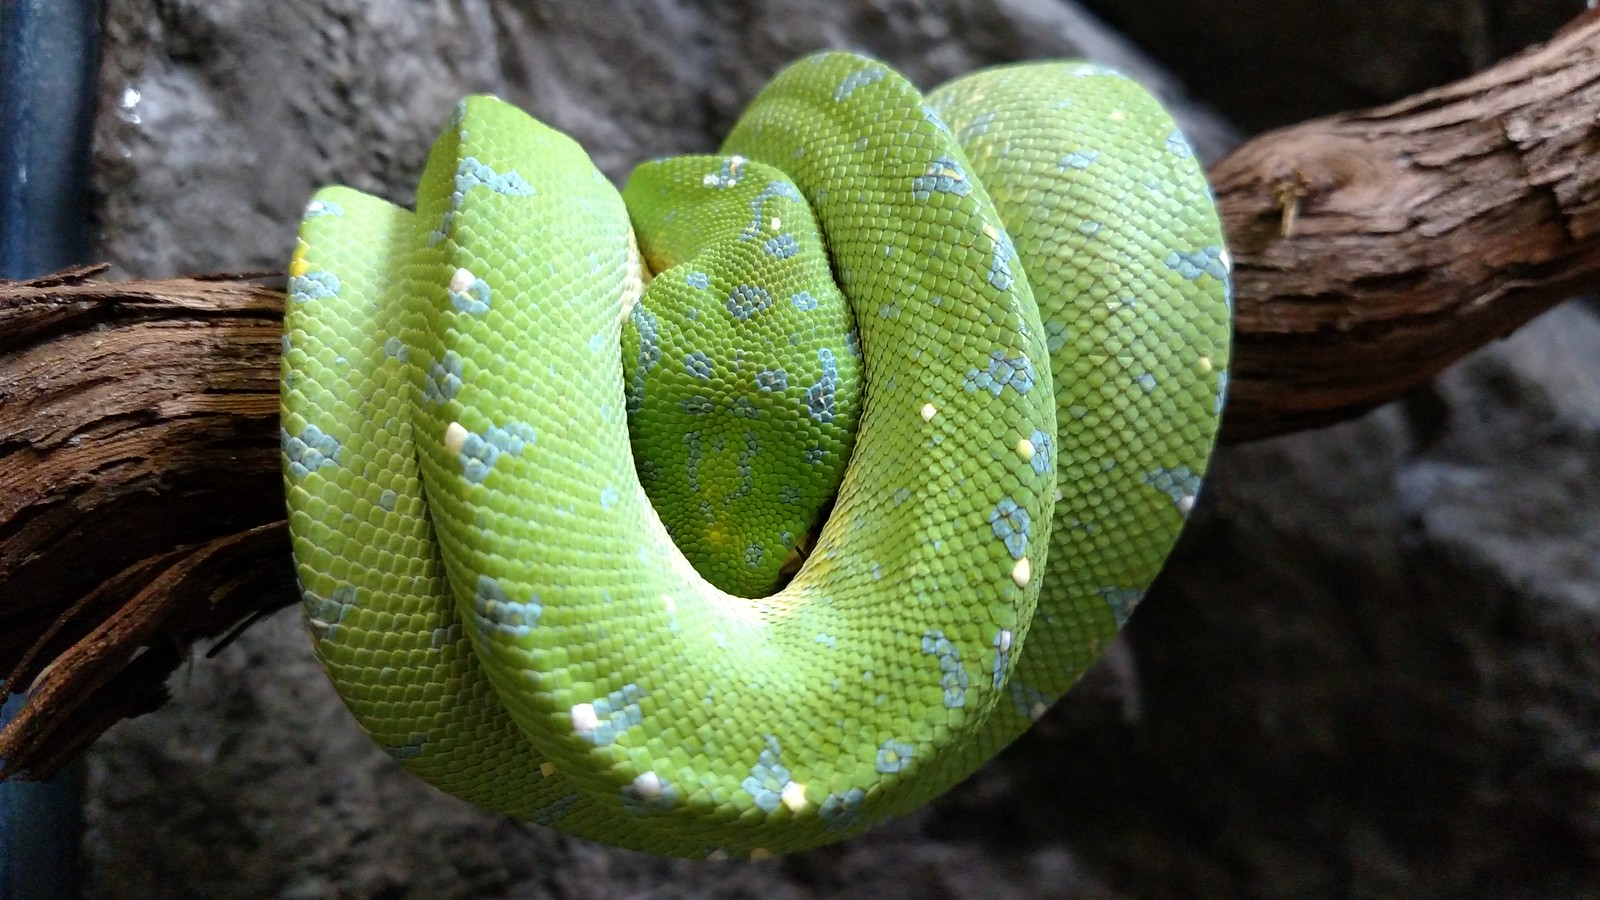 Green Tree Python • Brandywine Zoo • Go a Little Wild